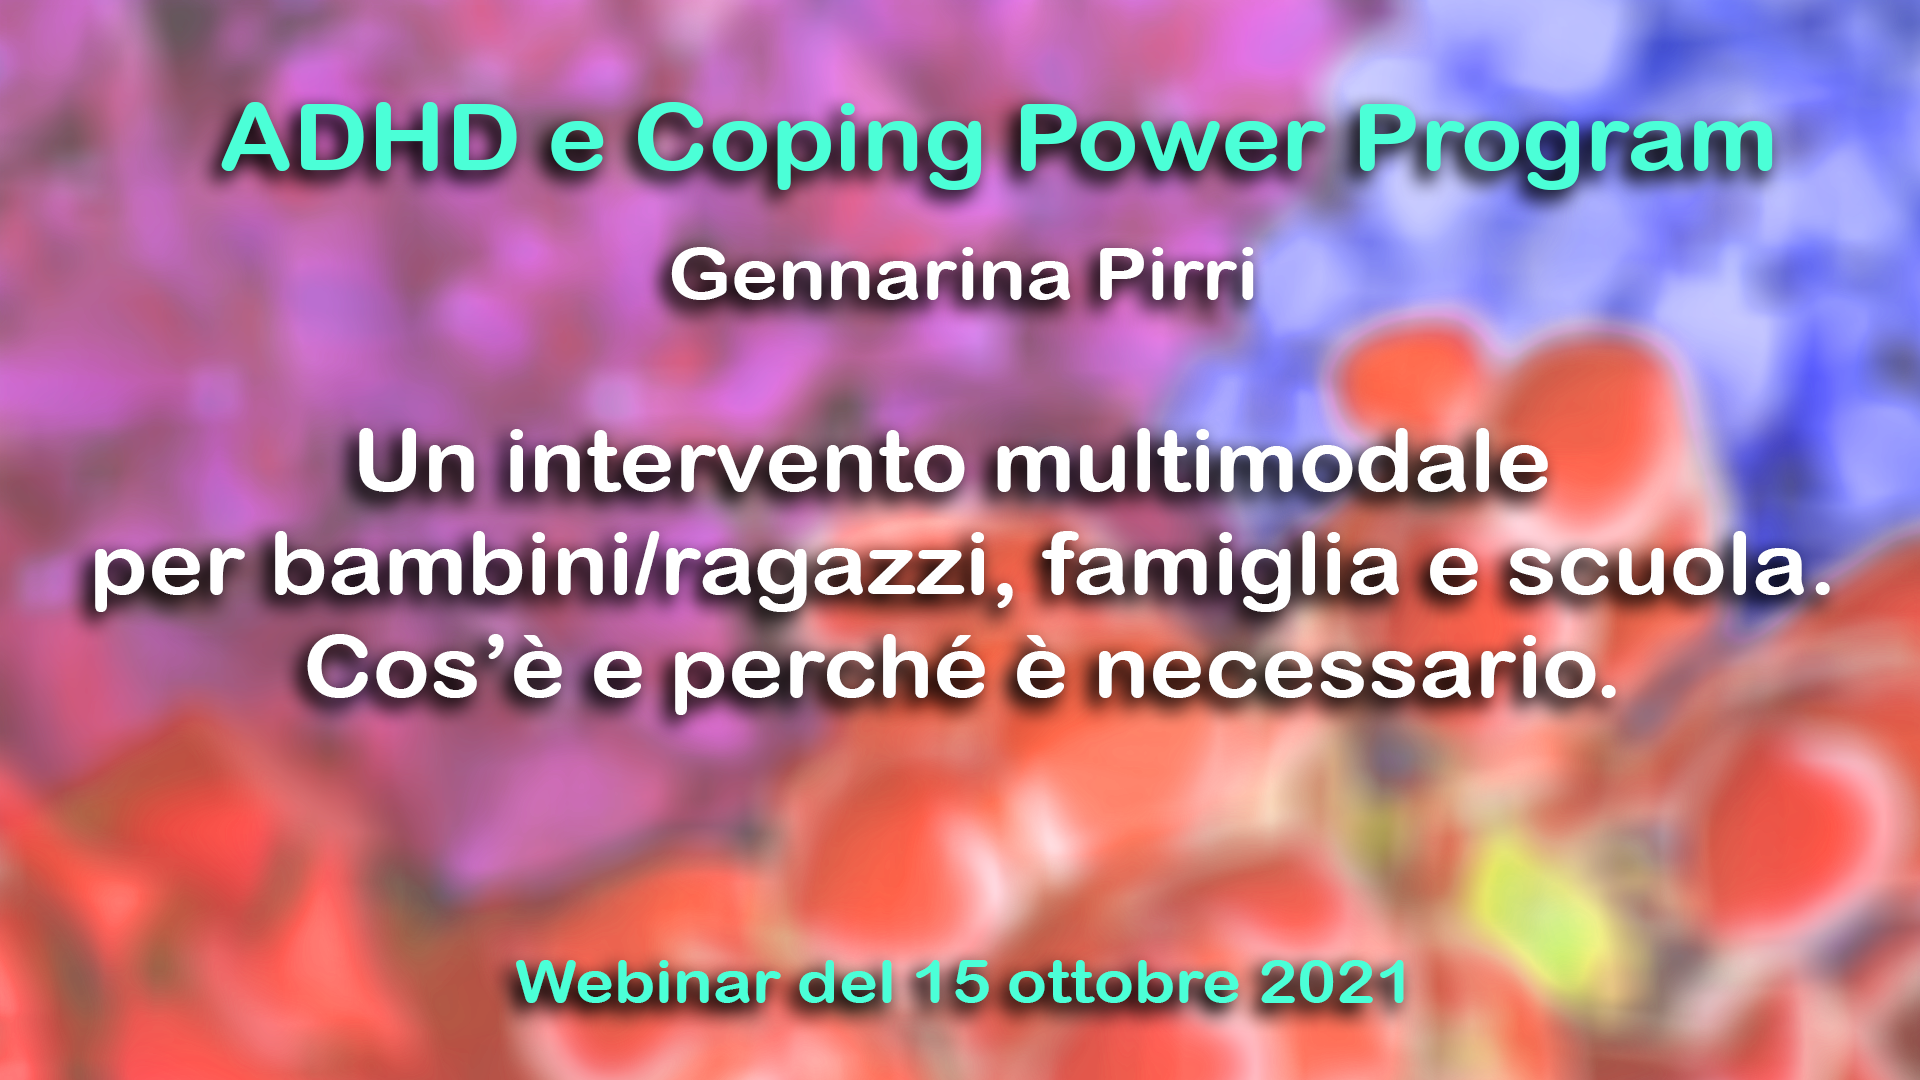 ADHD e Coping Power Program - il video